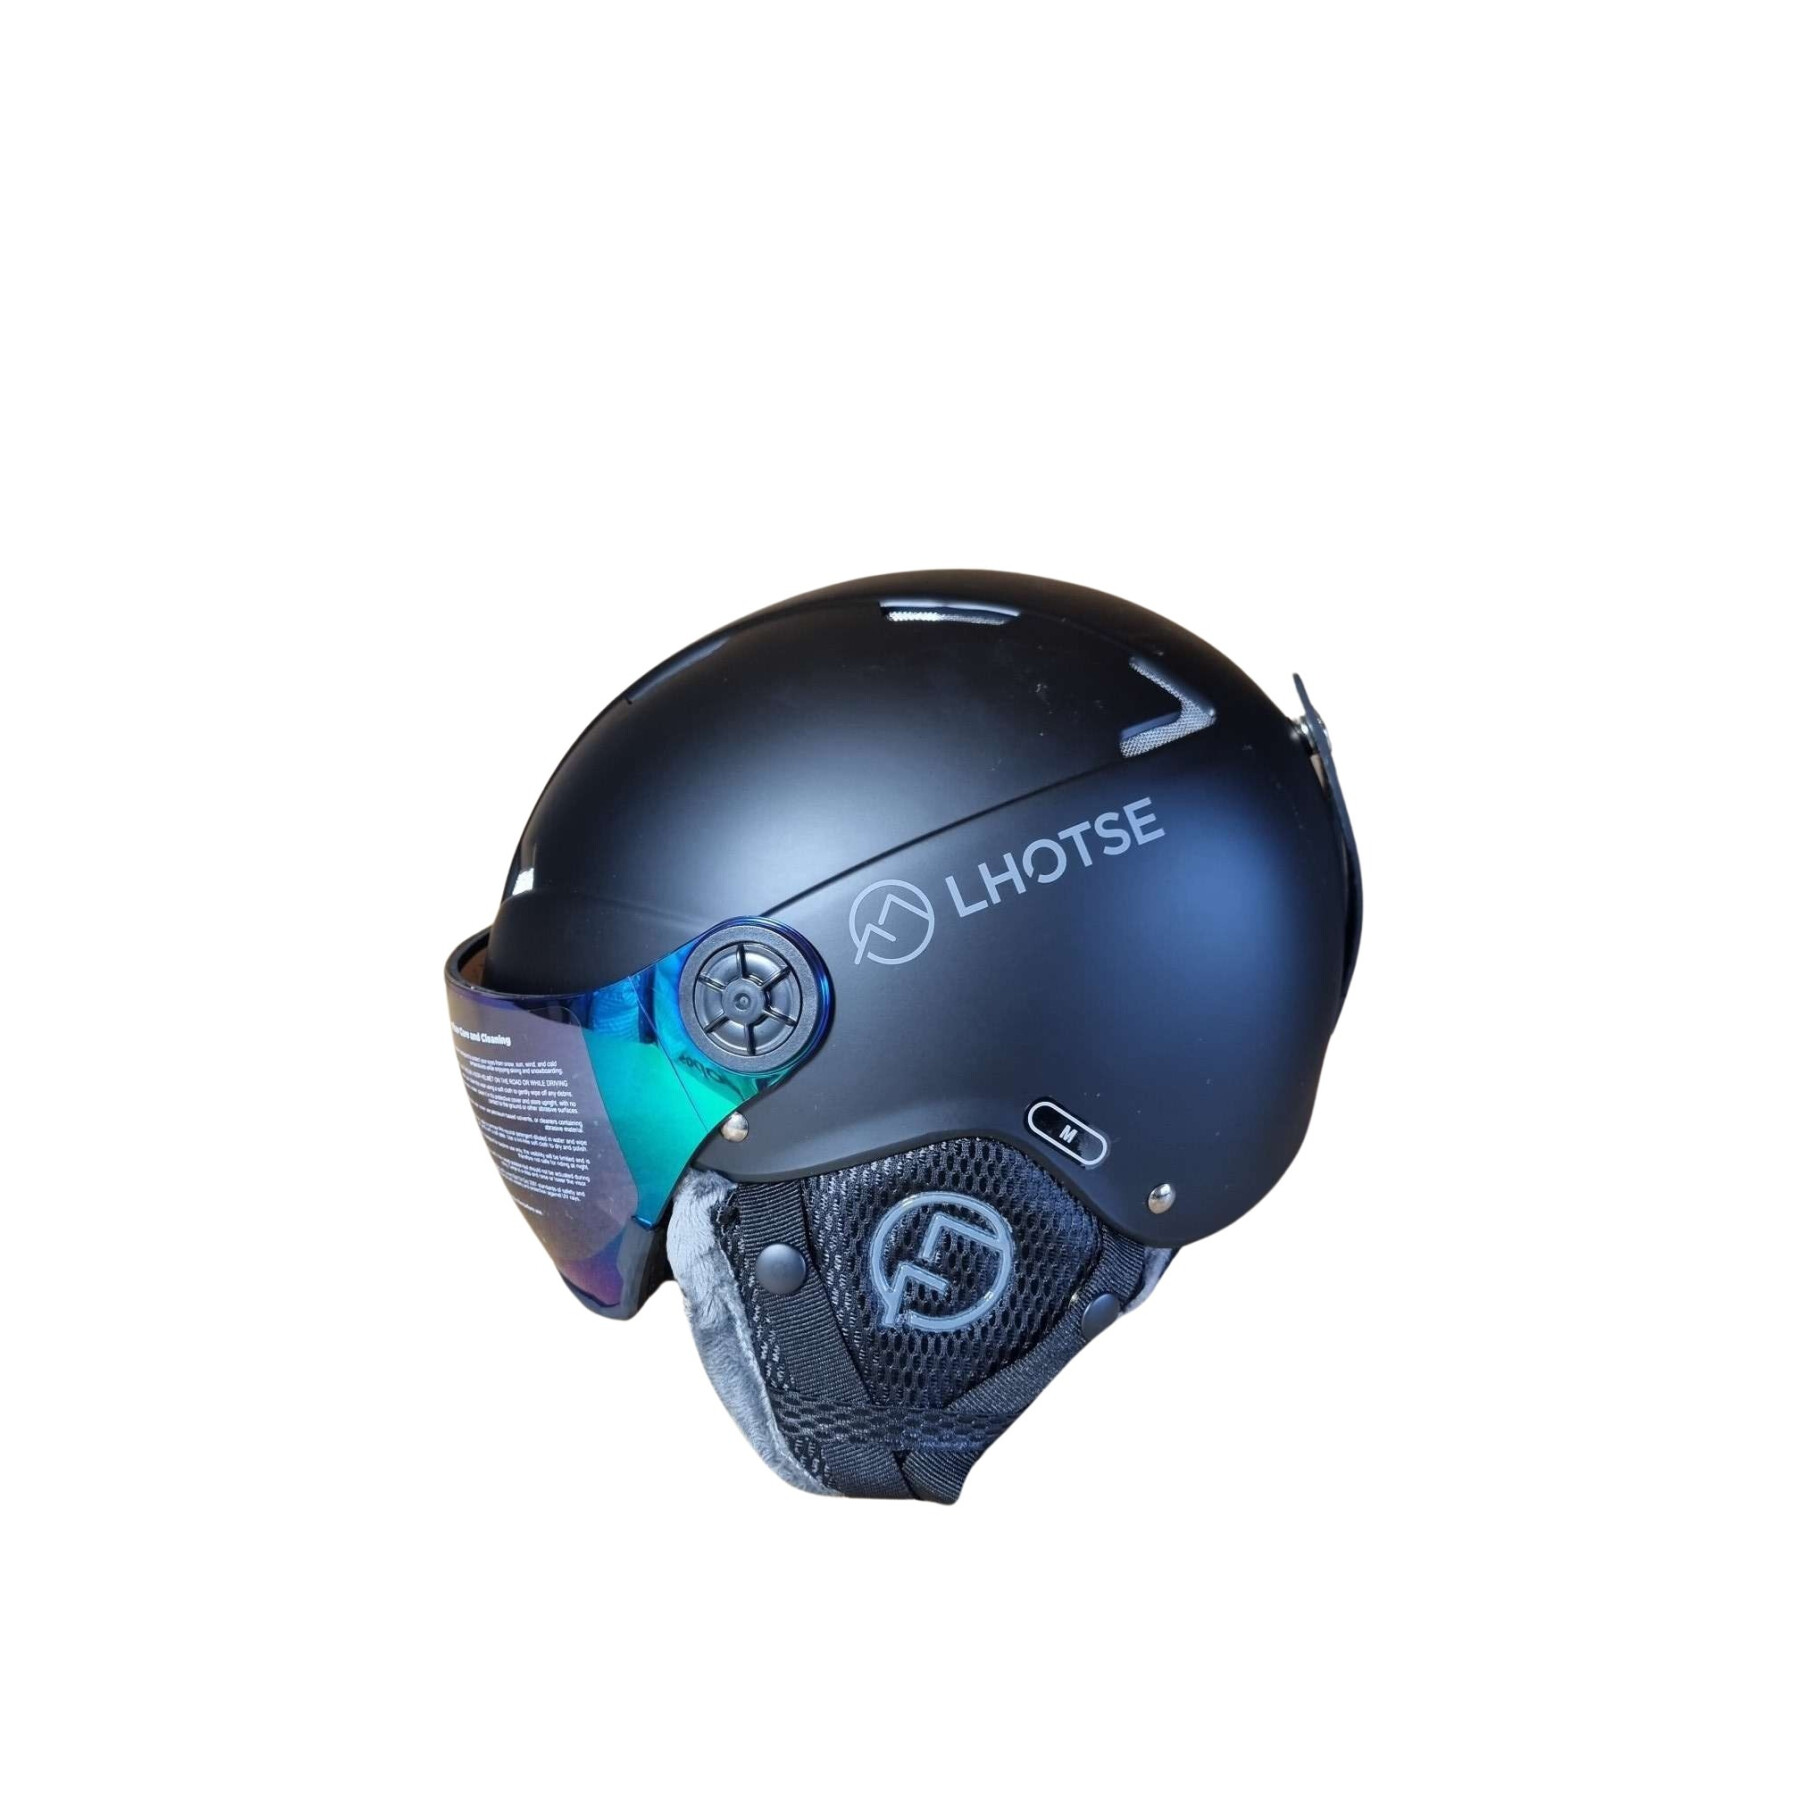 Ski helmet Lhotse helmet with visor